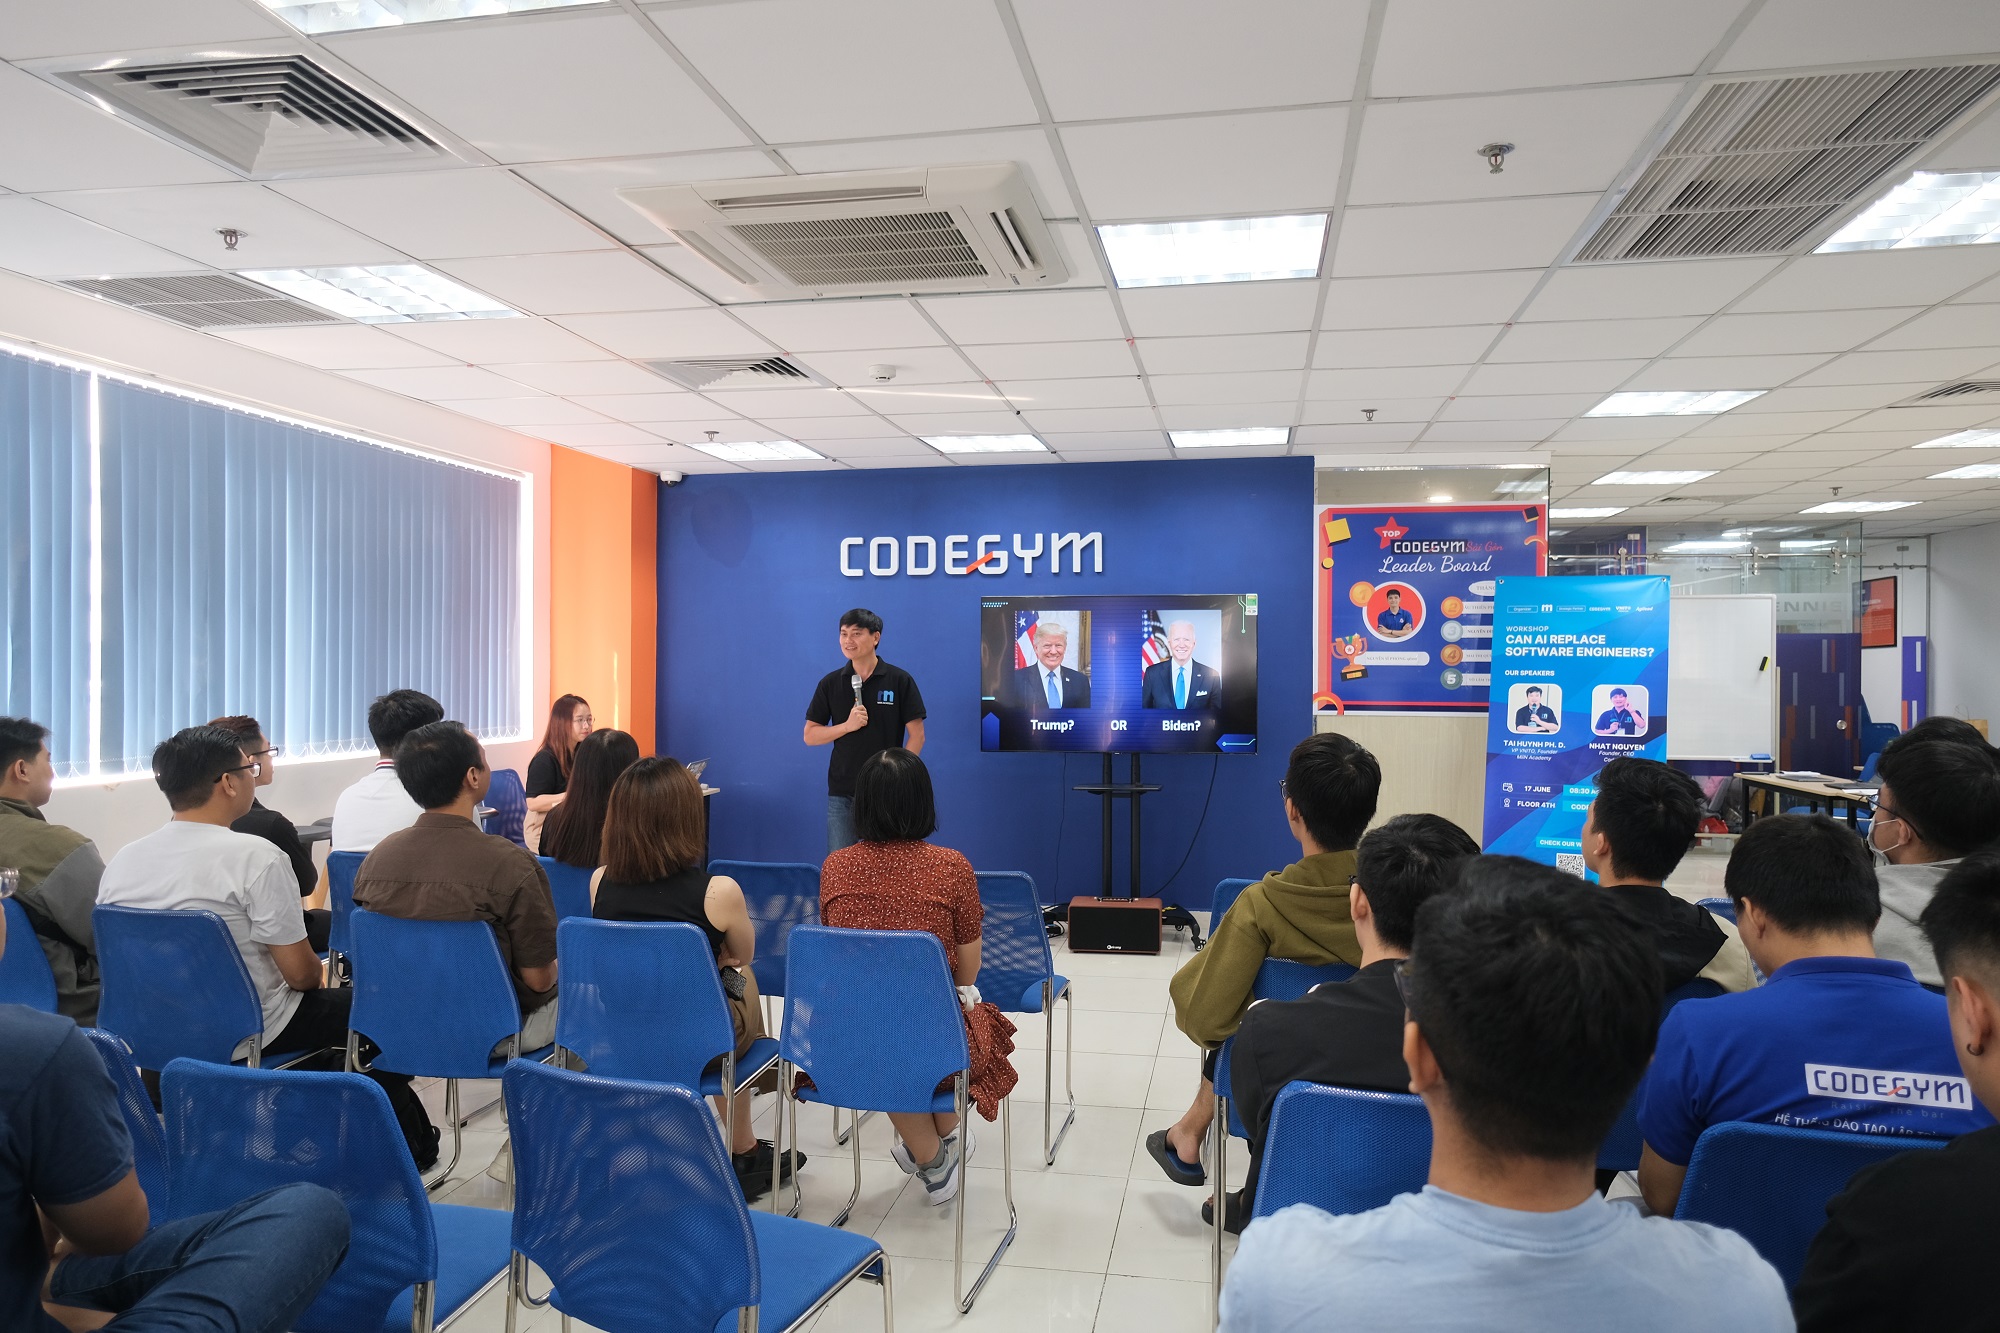 Anh Nguyễn Khắc Nhật, Founder, CEO CodeGym chia sẻ về sự phát triển của AI ảnh hưởng như thế nào đến công việc của các kỹ sư phần mềm